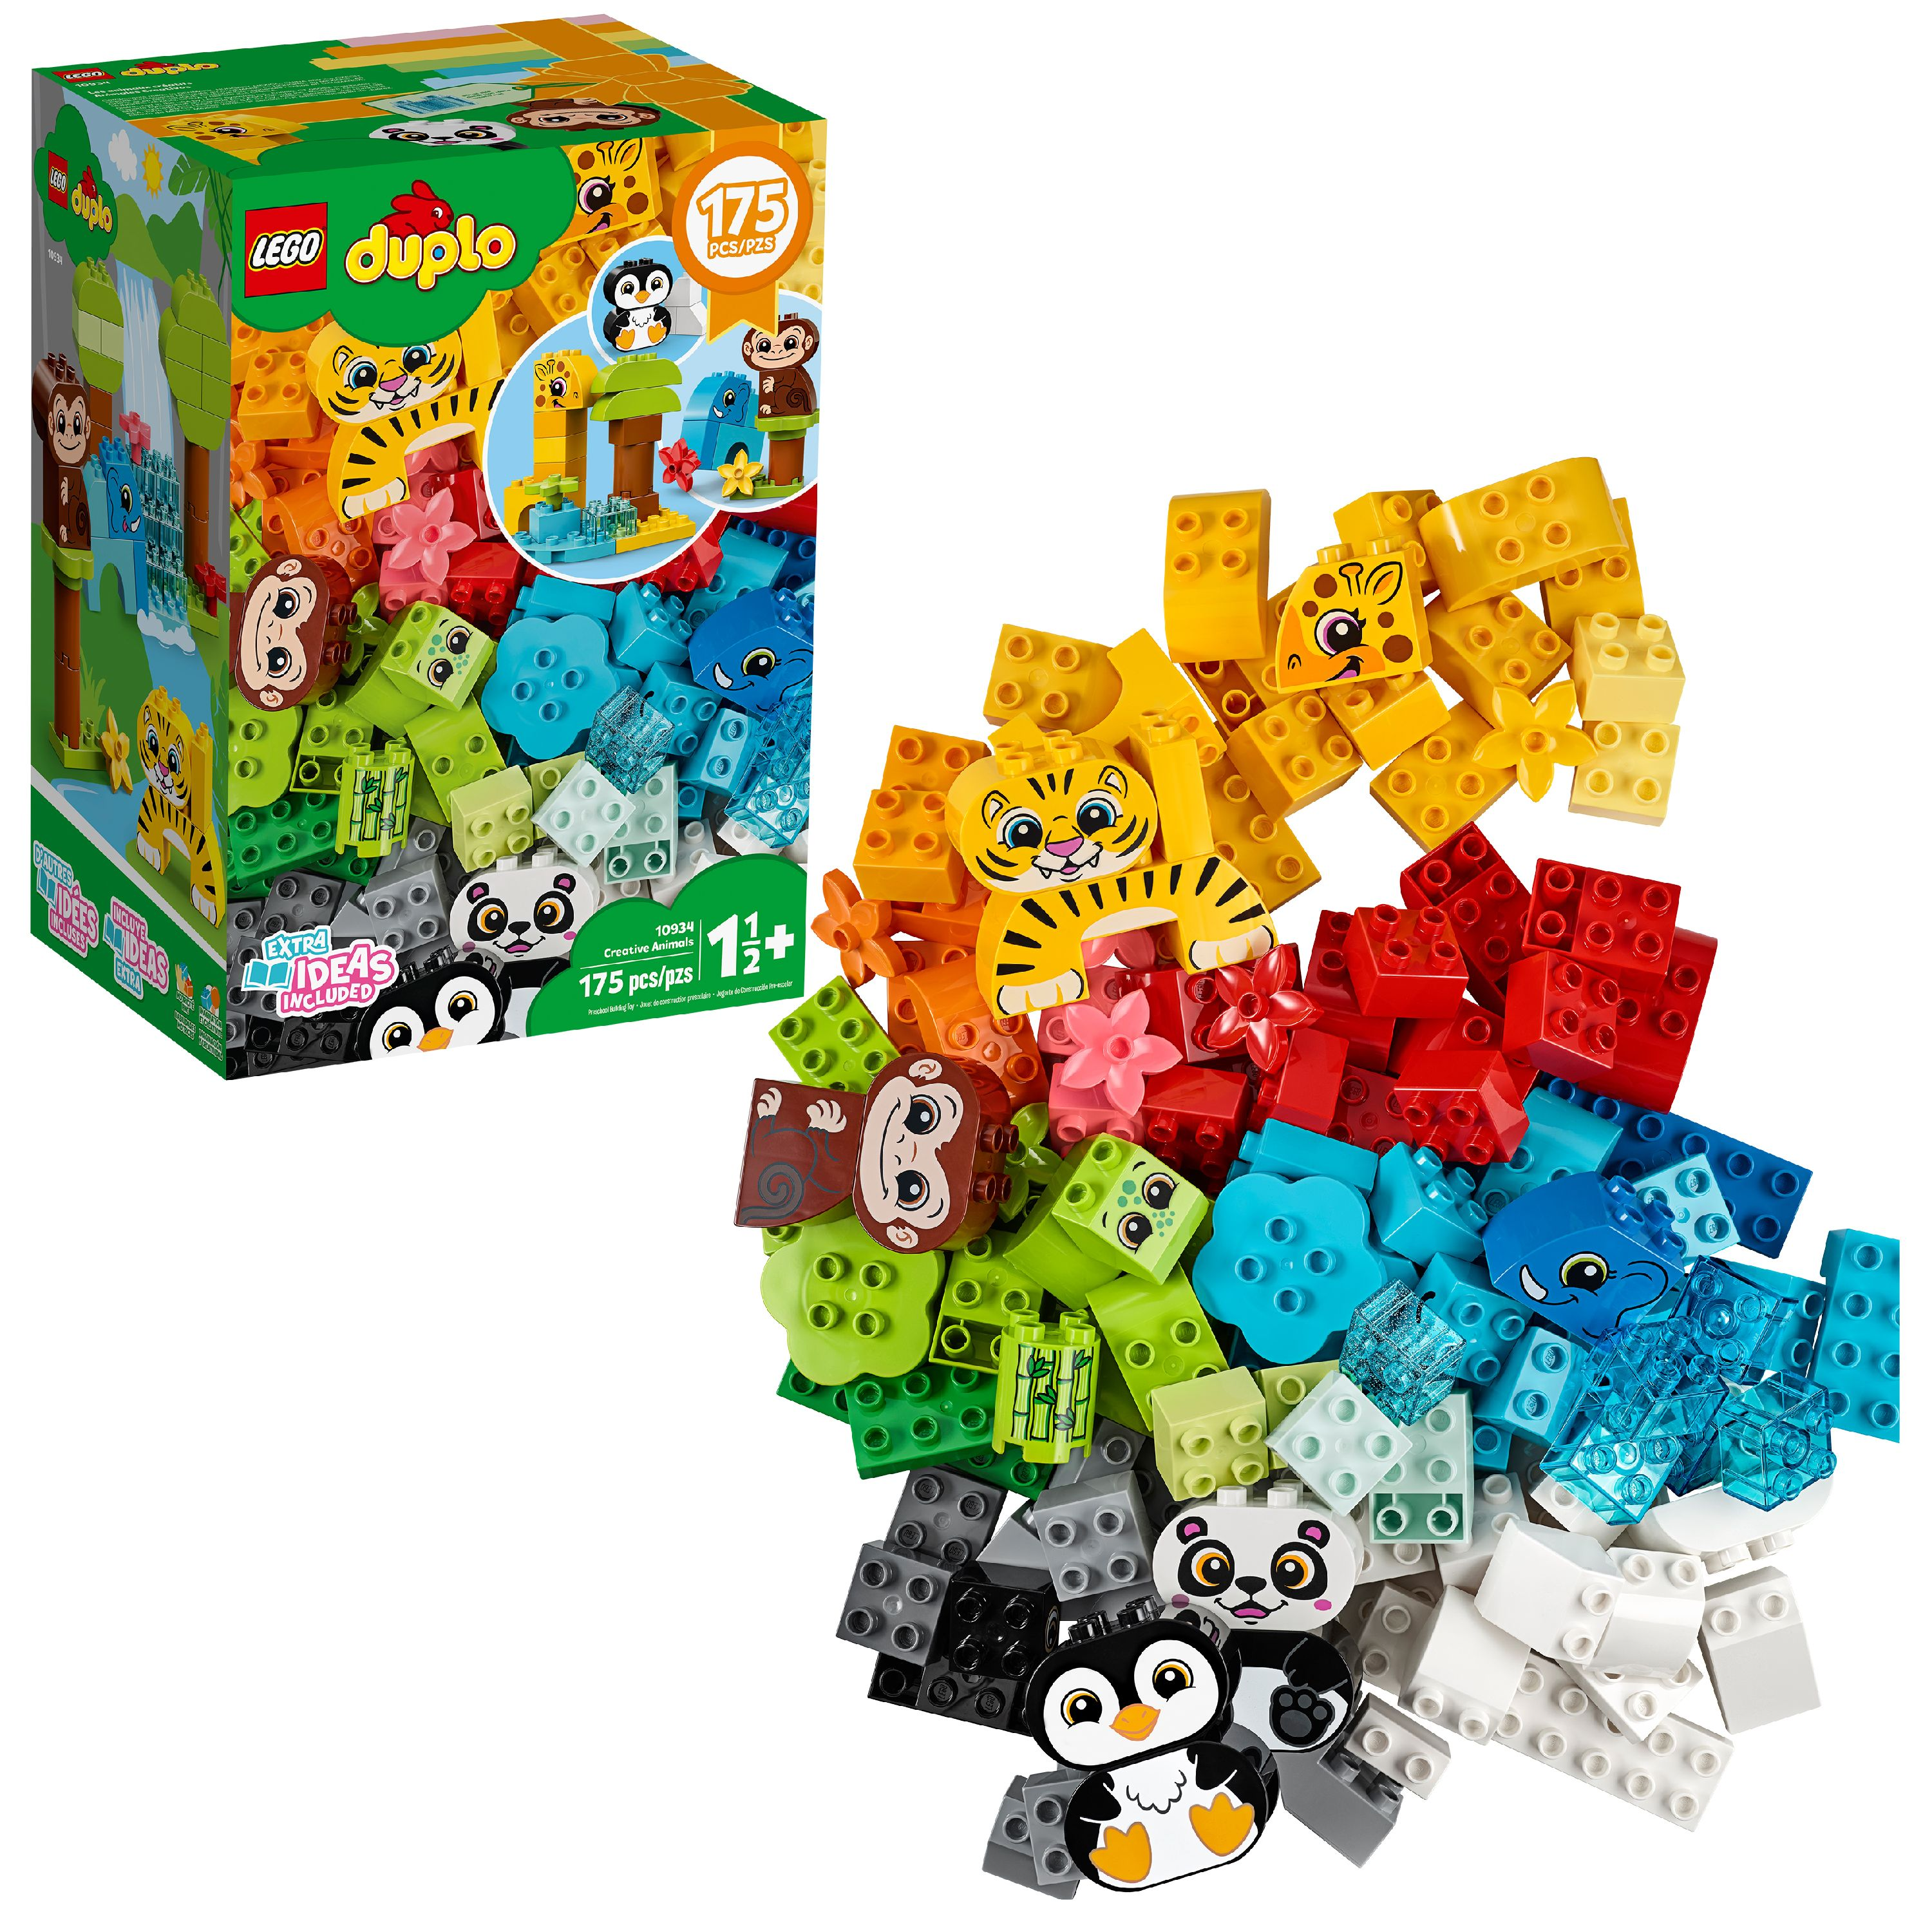 LEGO DUPLO Classic Creative Animals $29.99